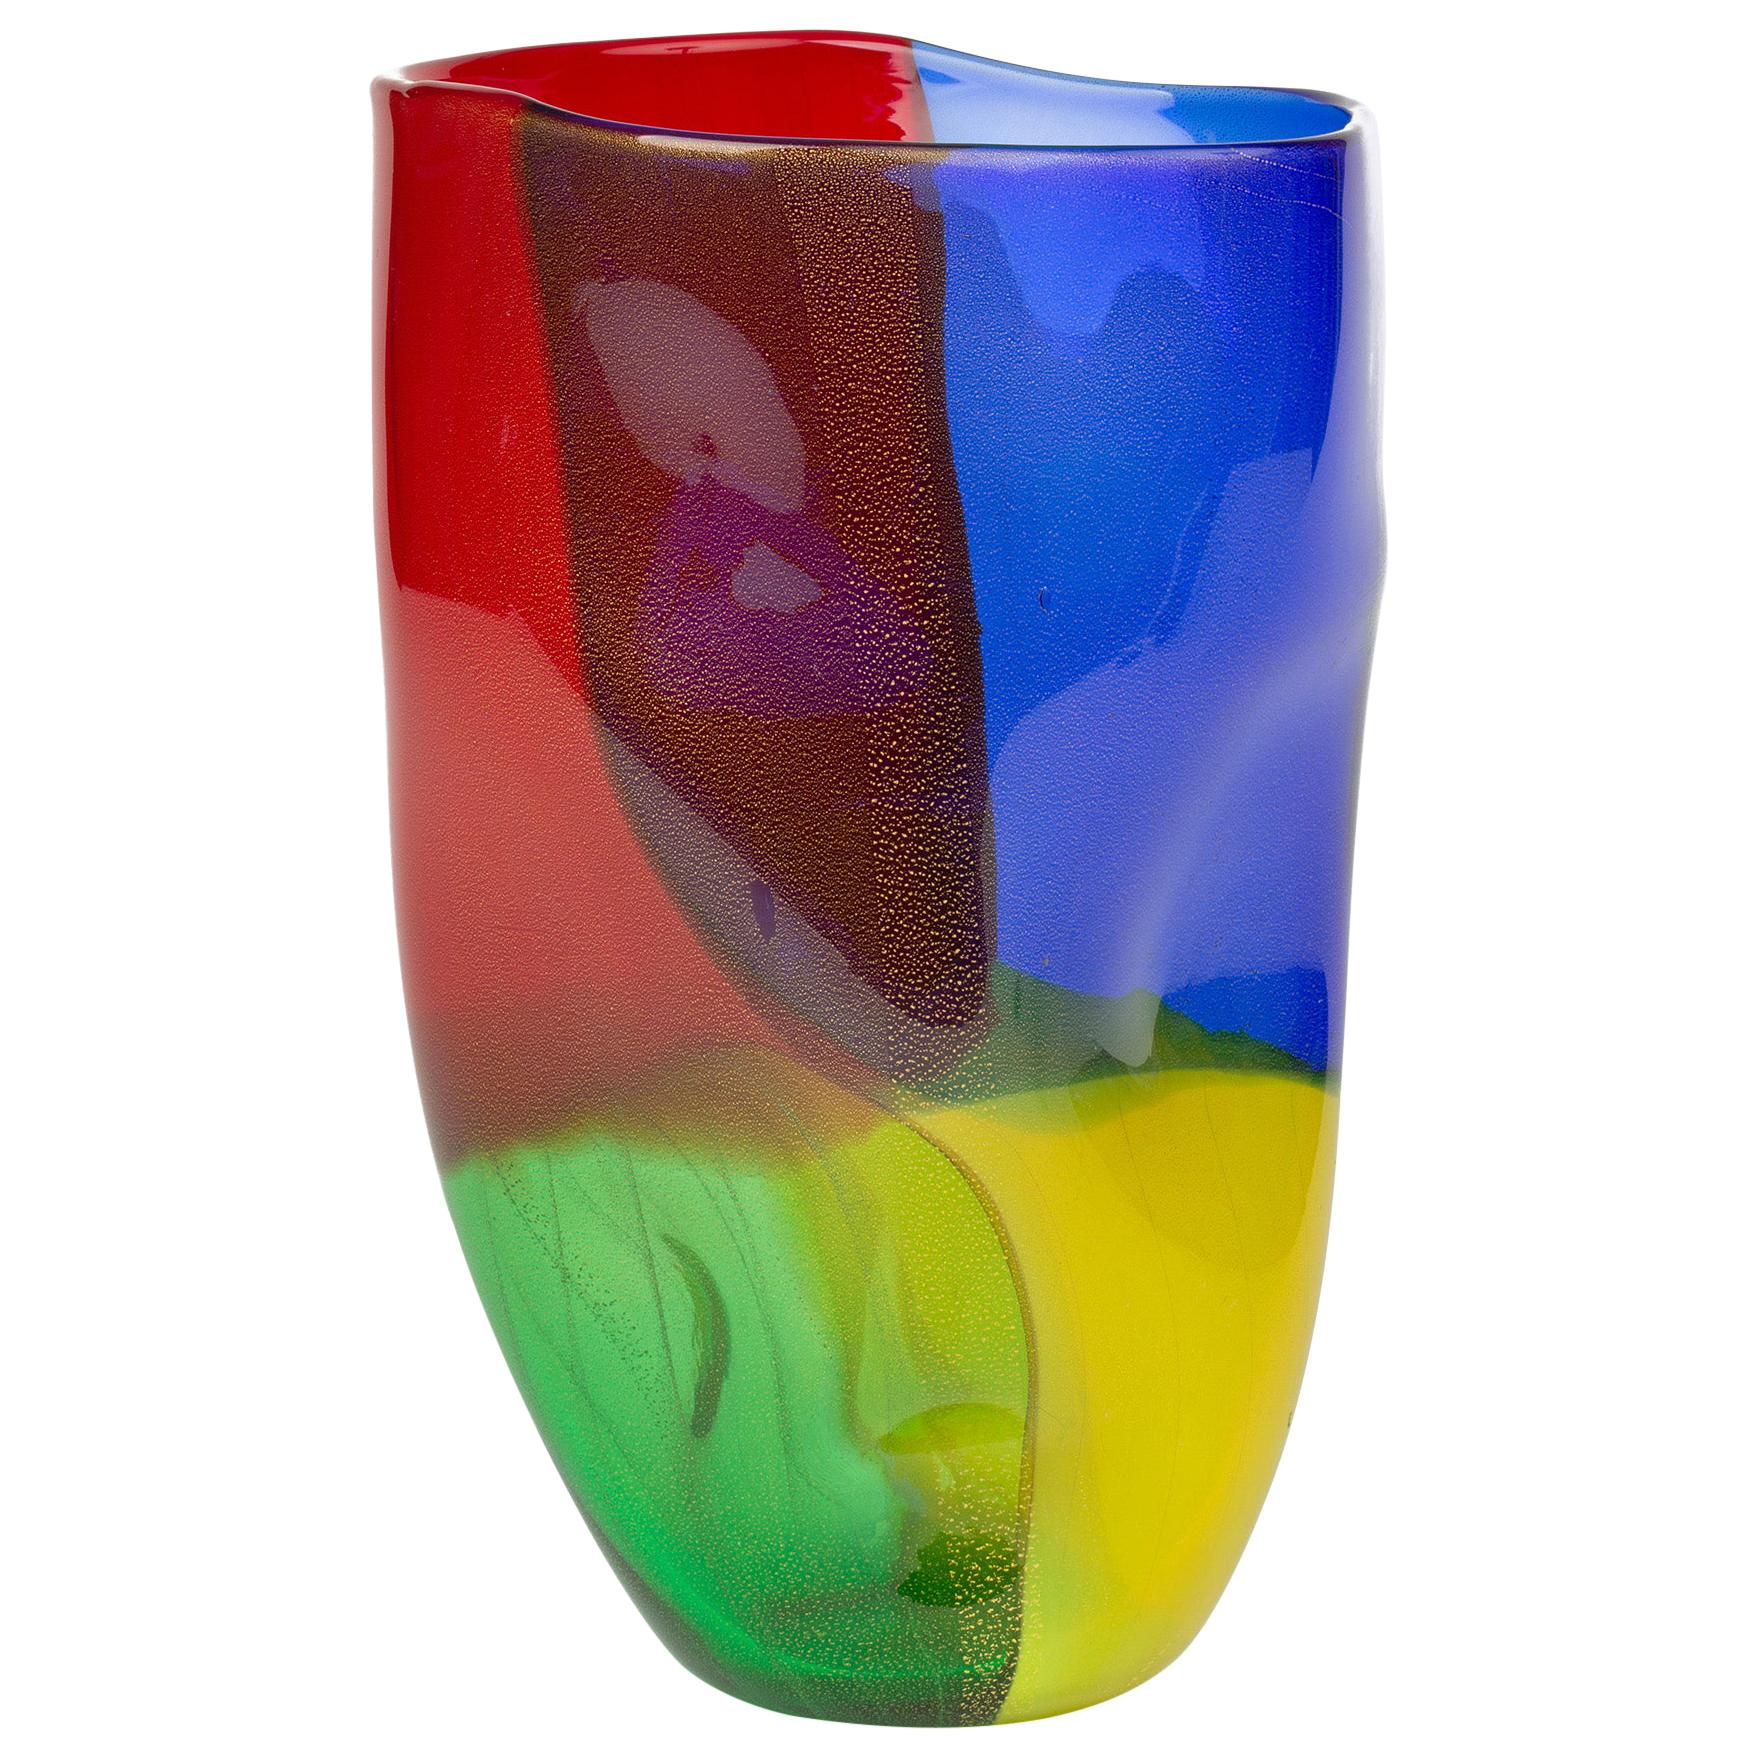 Seguso Viro Murano 4 Quarti Incalmo Colored Art Glass Vase